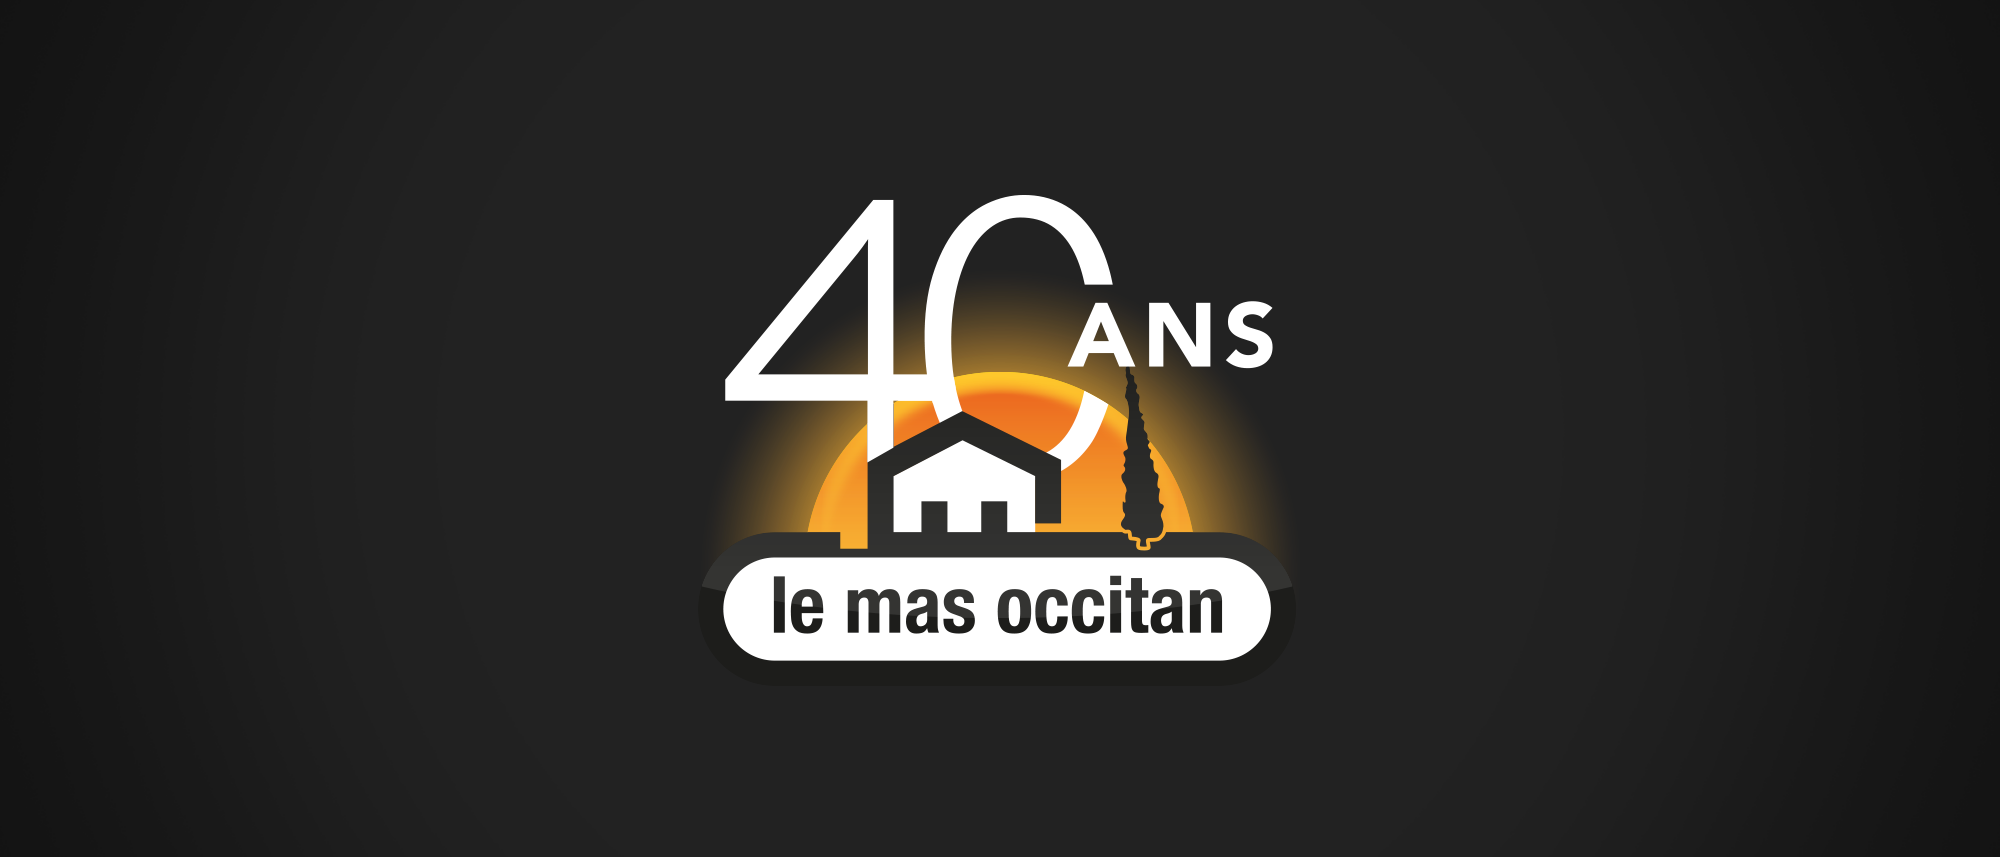 Le Mas Occitan a 40 ans !